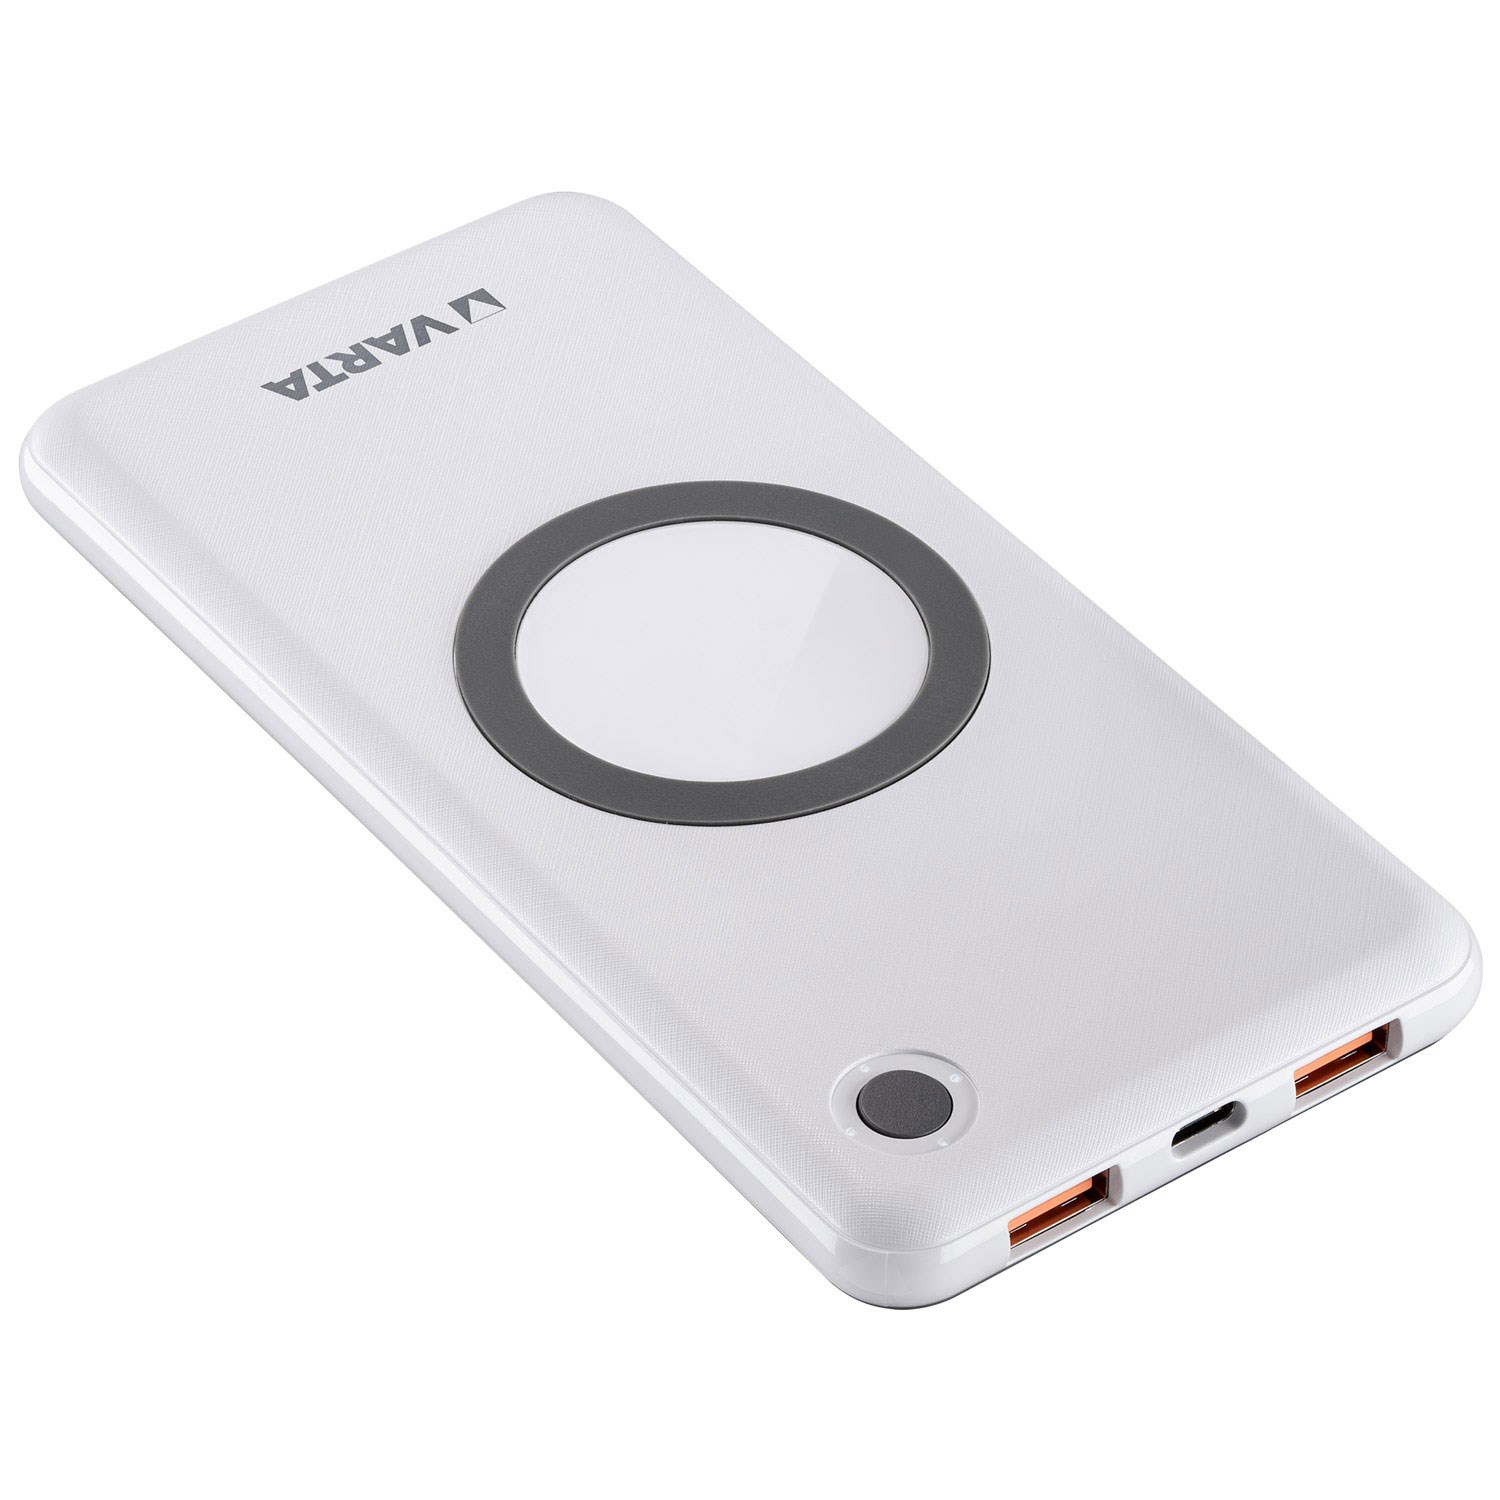 Bild von Varta 2 in 1 Wireless Charger und Power Bank V57913 / 10.000mAh / 3,7V / mit USB Typ C Ladekabel 50 cm